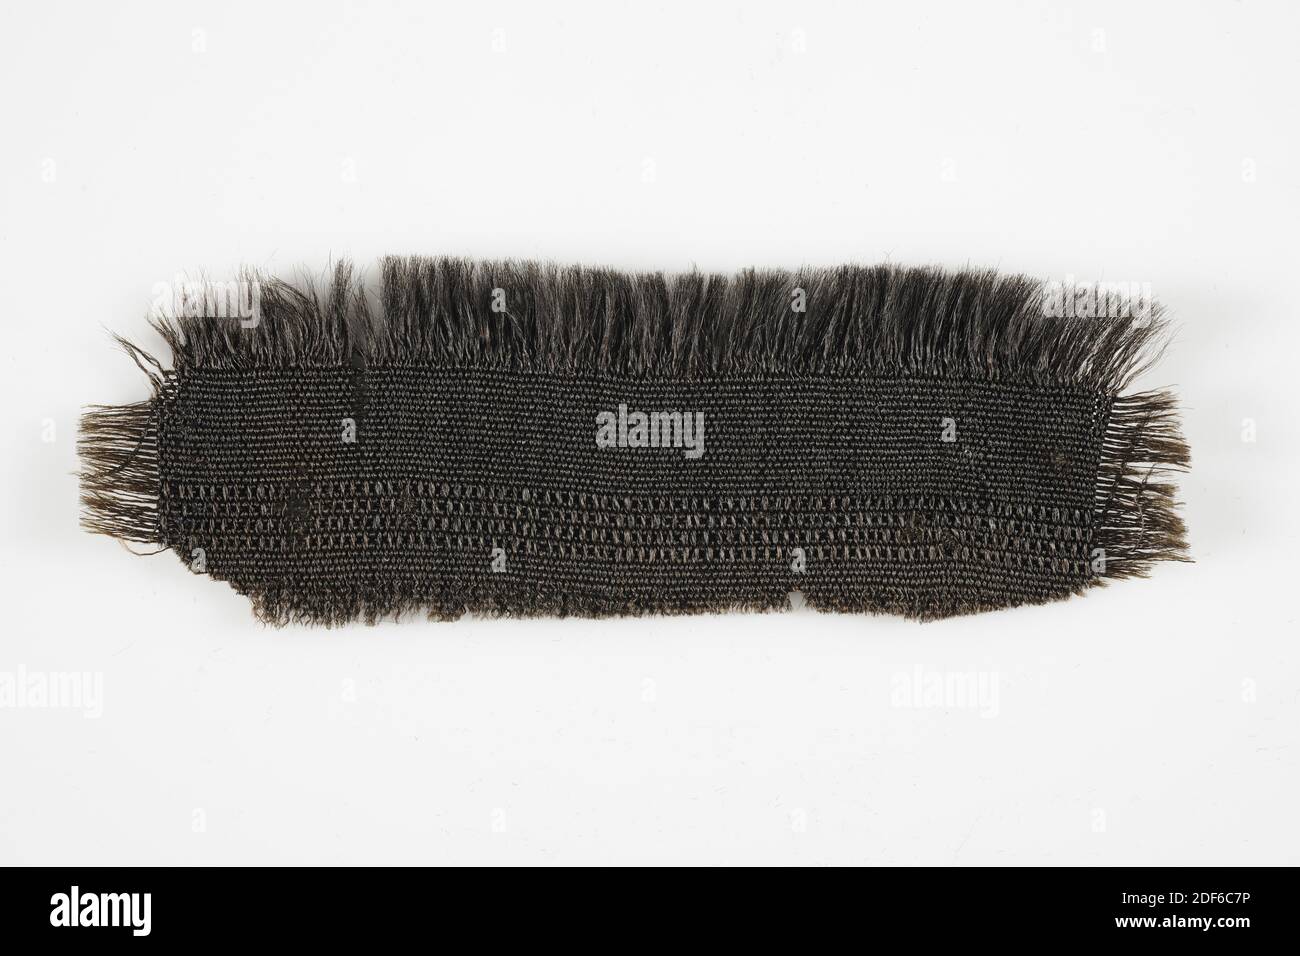 Acier, Anonyme, 1656, tissé, général: 5 x 16cm (50 x 160mm), acier étroit de grain noir de Leiden dans la nervure liant avec piste de fantaisie. Effiloché sur trois côtés, 1917 Banque D'Images